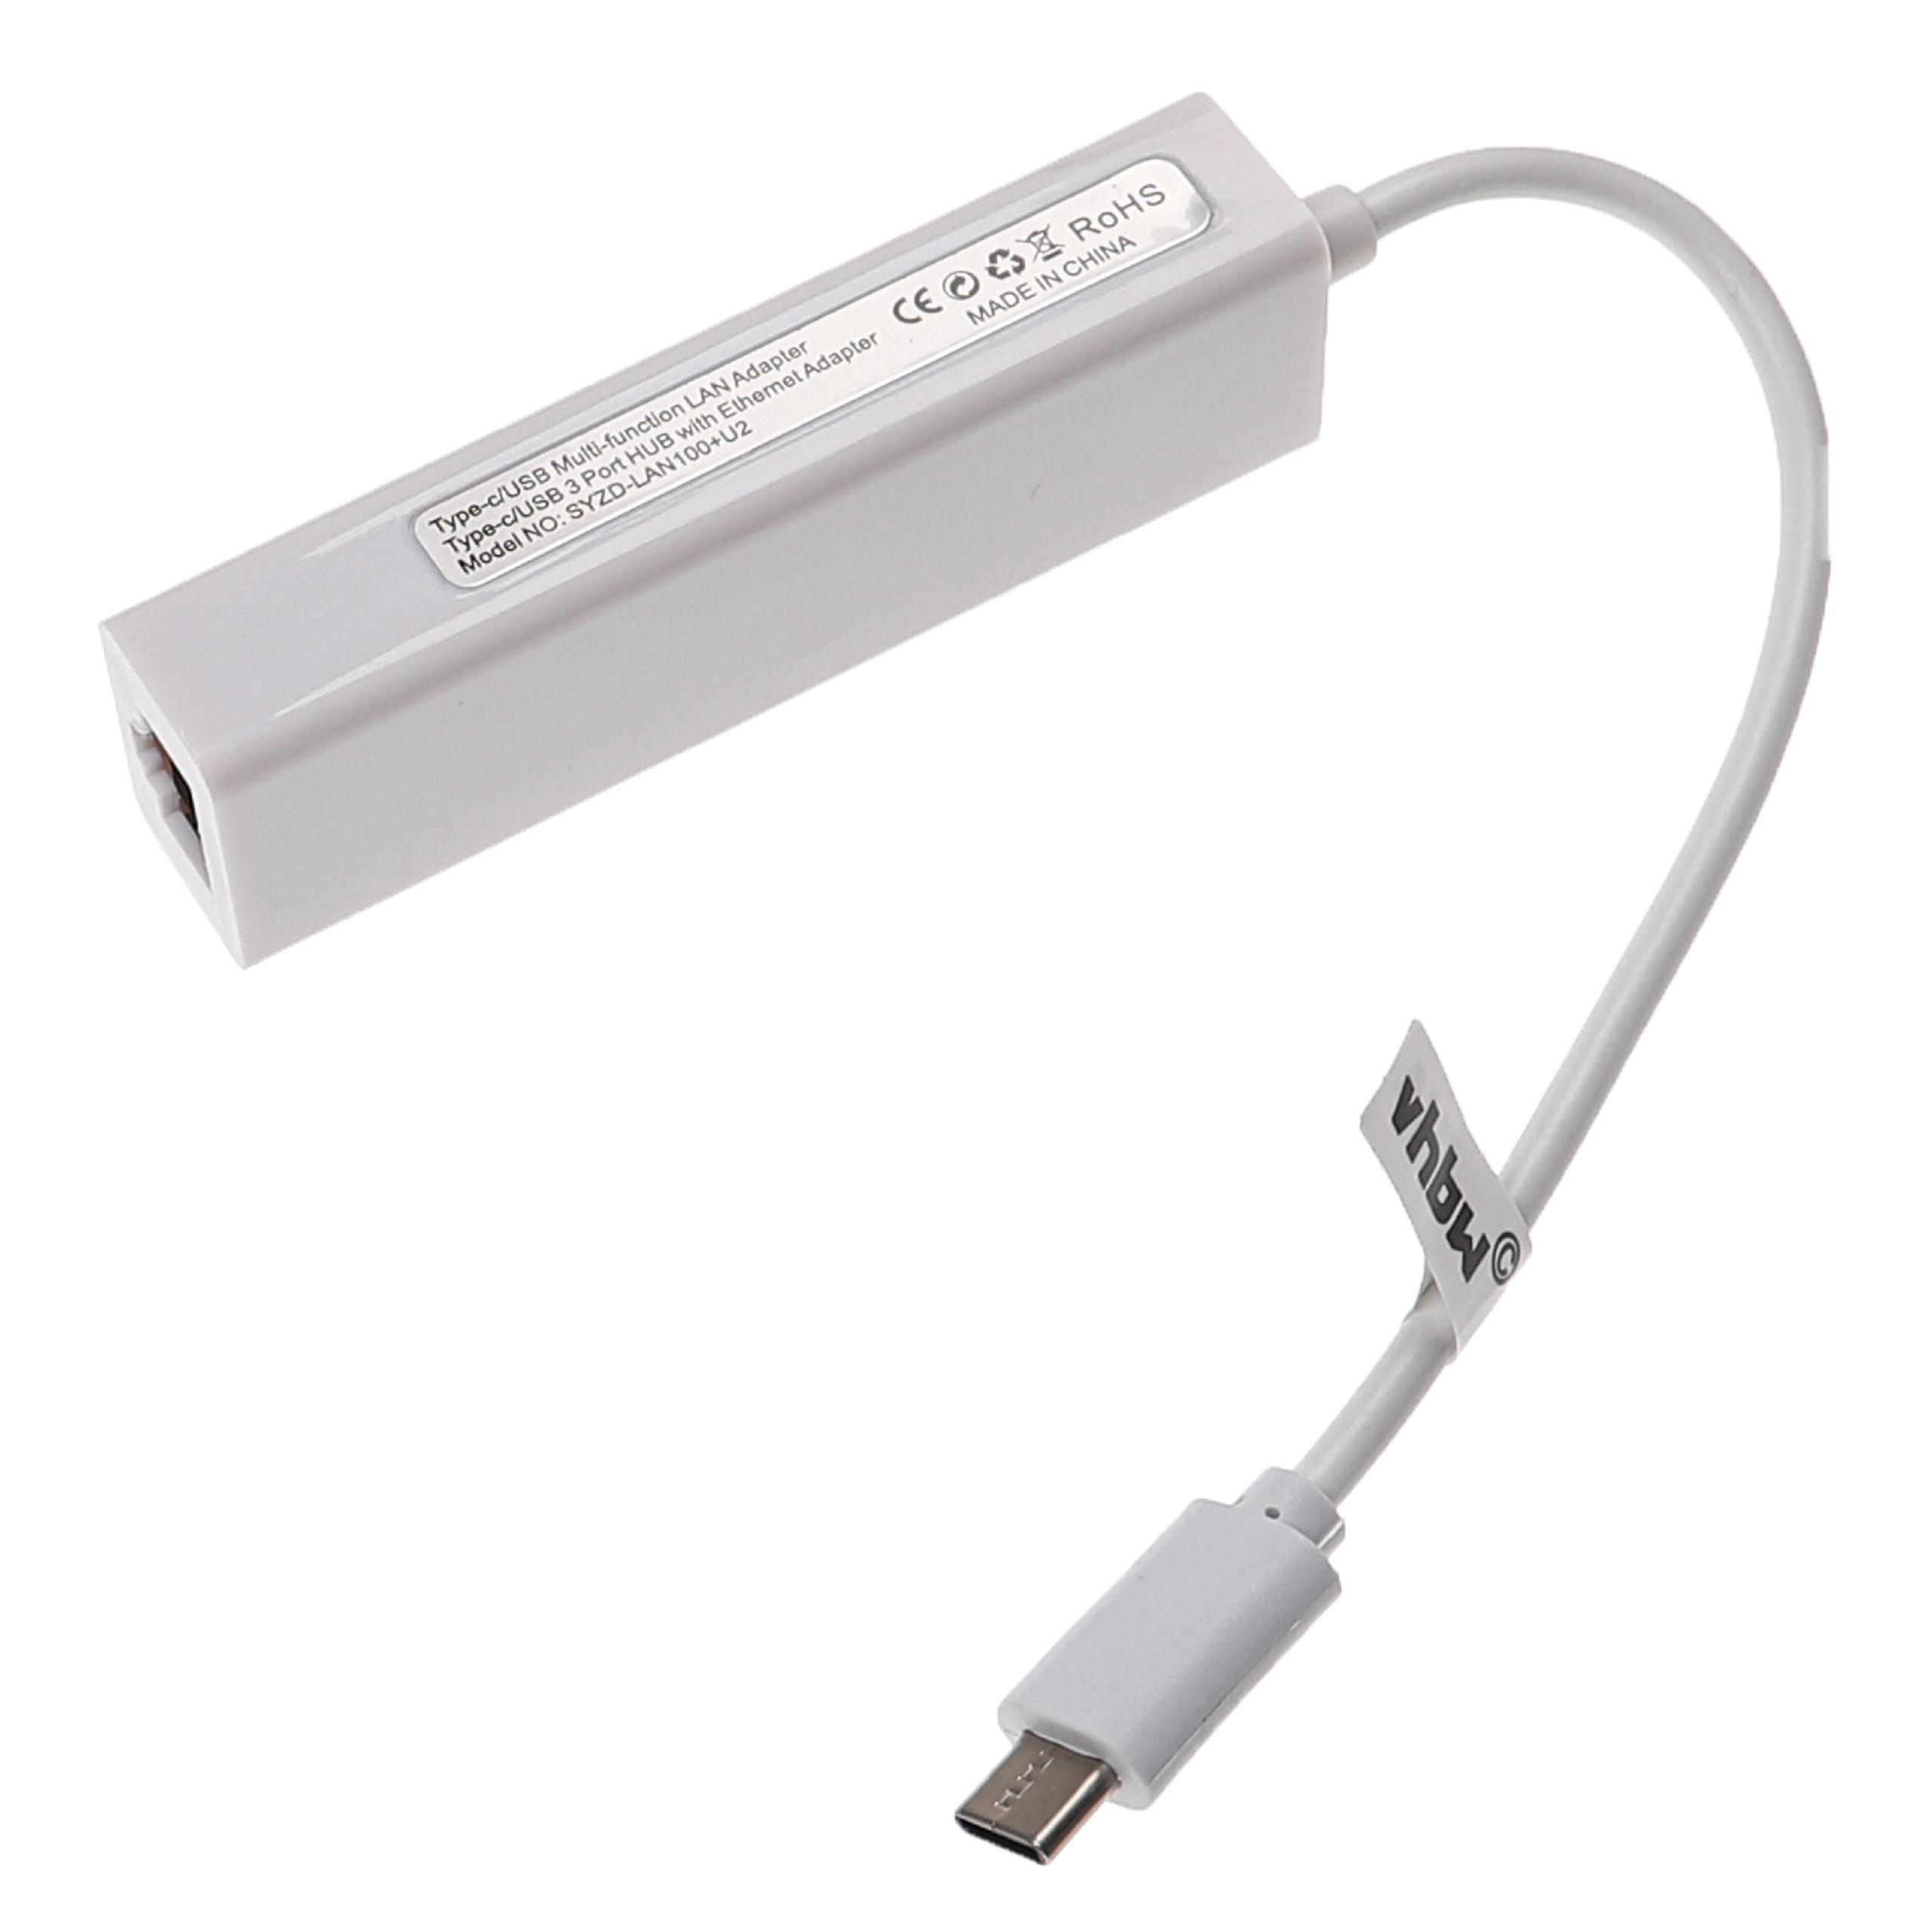 Adapter do internetu USB C (m) na RJ45 (ż) do laptopa, komputera + 3 dodtkowe gniazda USB A